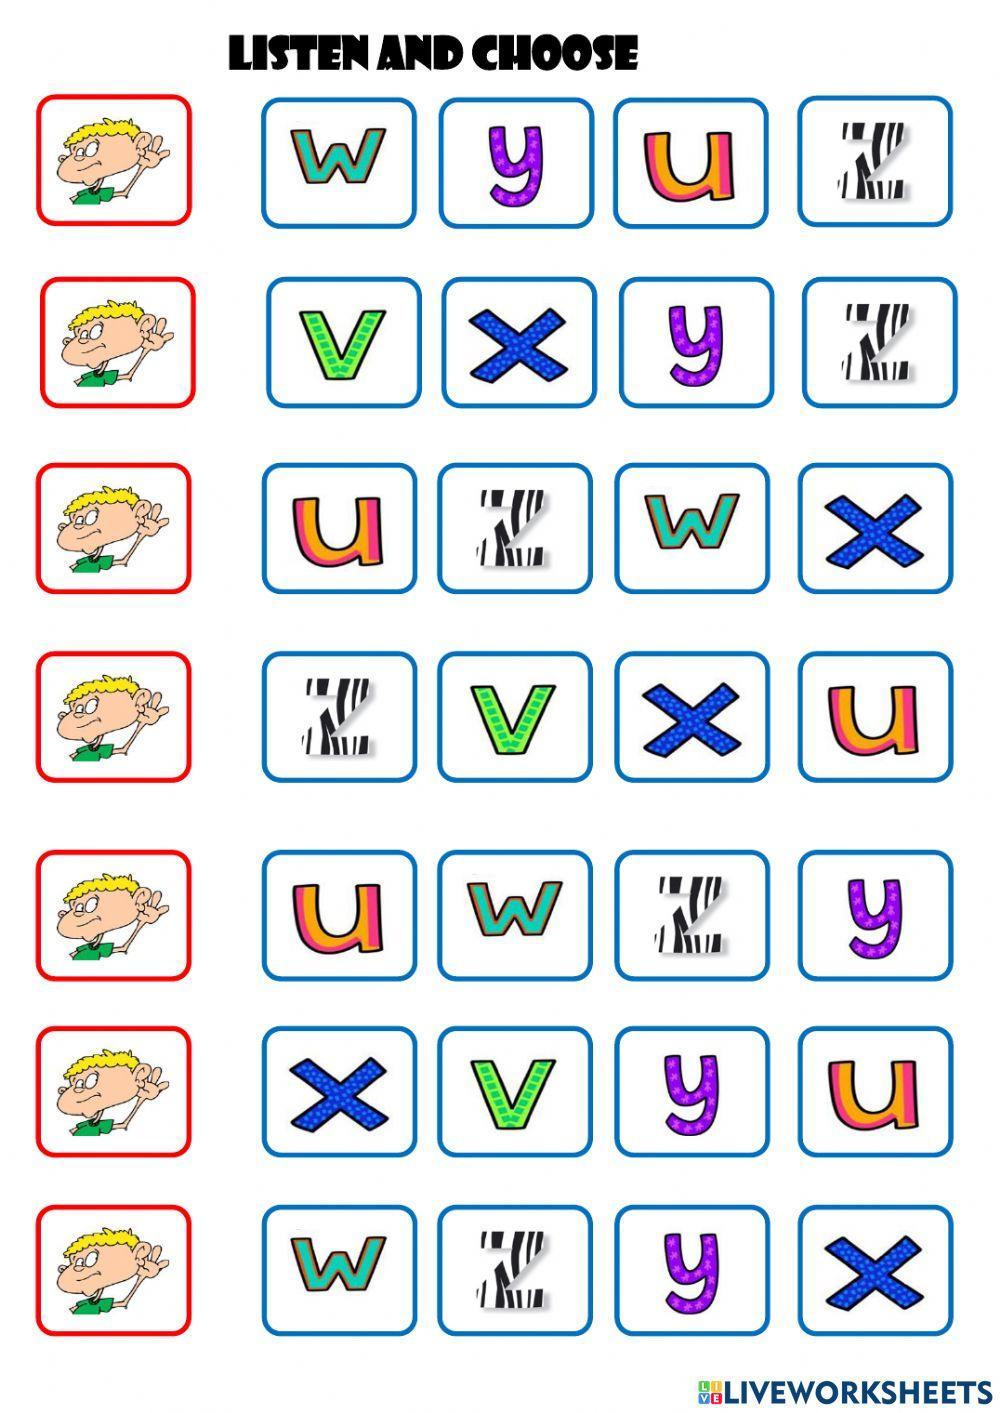 The alphabet U V W X Y Z